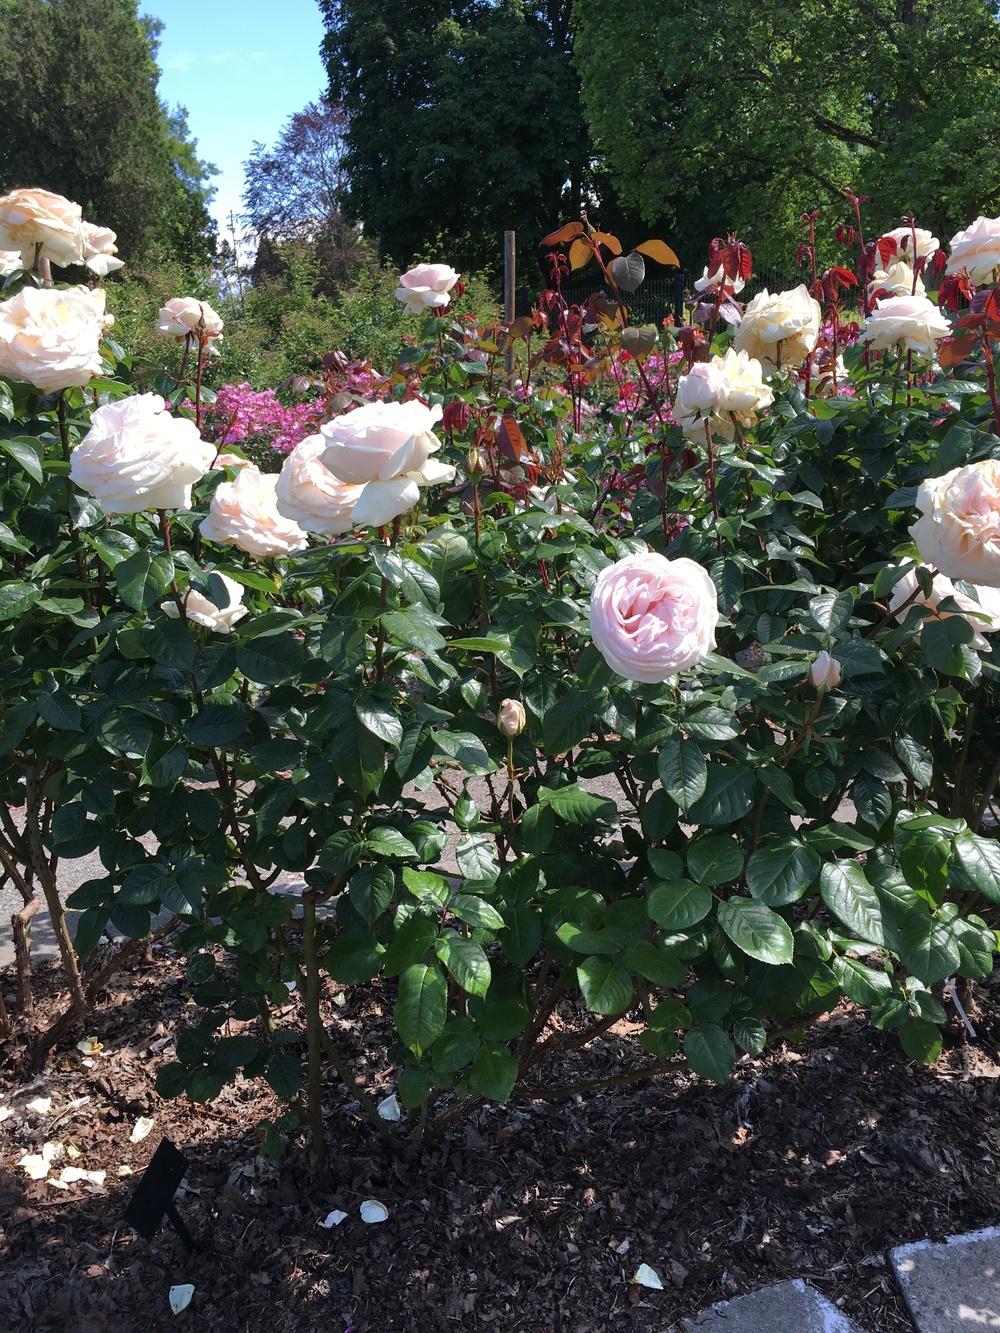 Photo of Rose (Rosa 'Schloss Ippenburg') uploaded by Milljame